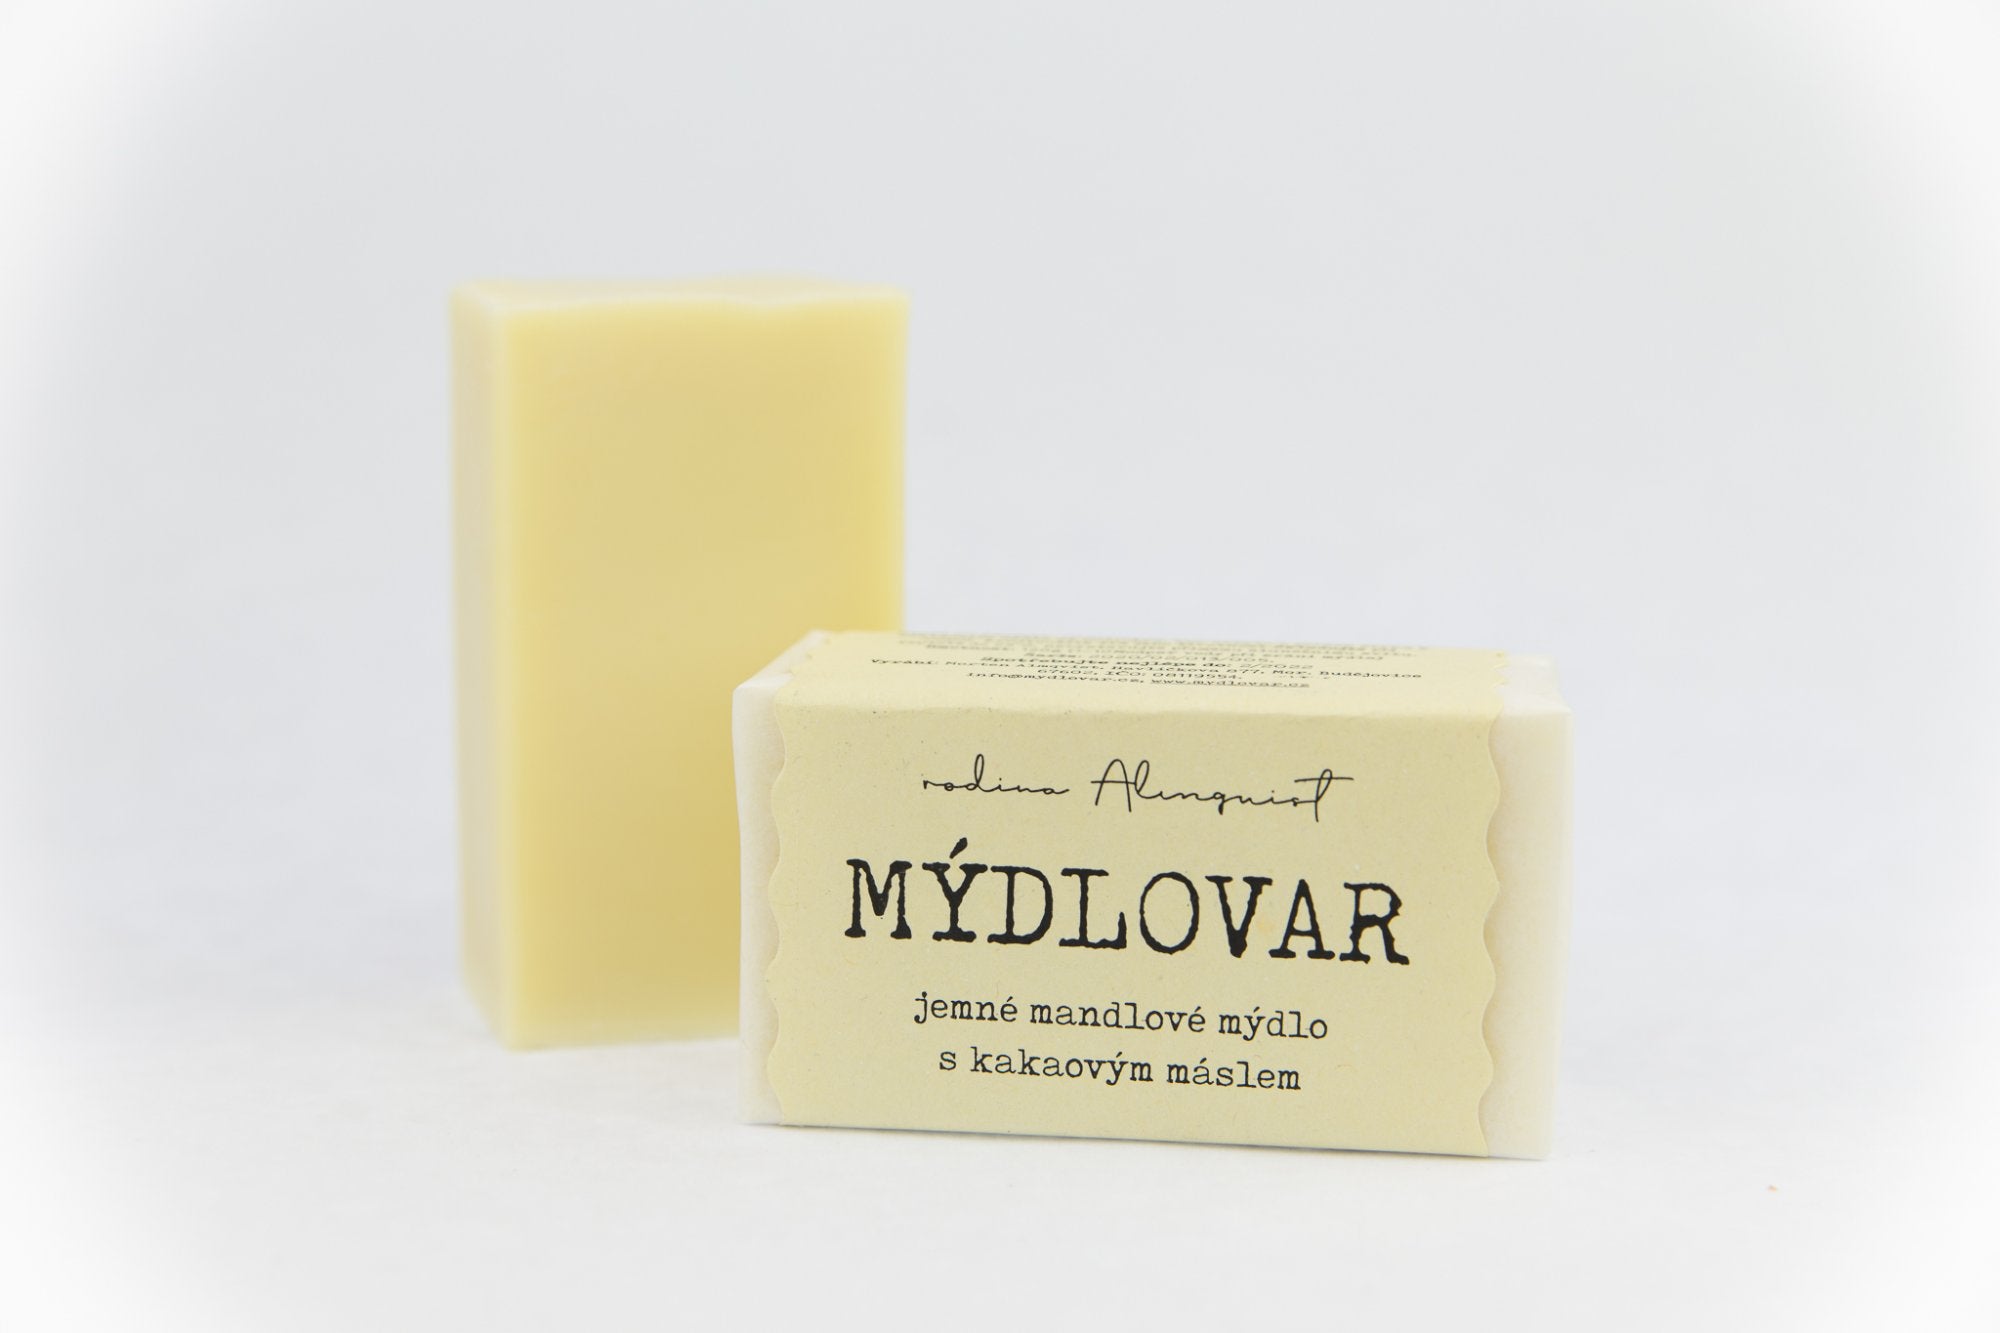 Mýdlovar Jemné mandlové mýdlo s kakaovým máslem 120 g - vhodné i pro cíti a miminka Mýdlovar